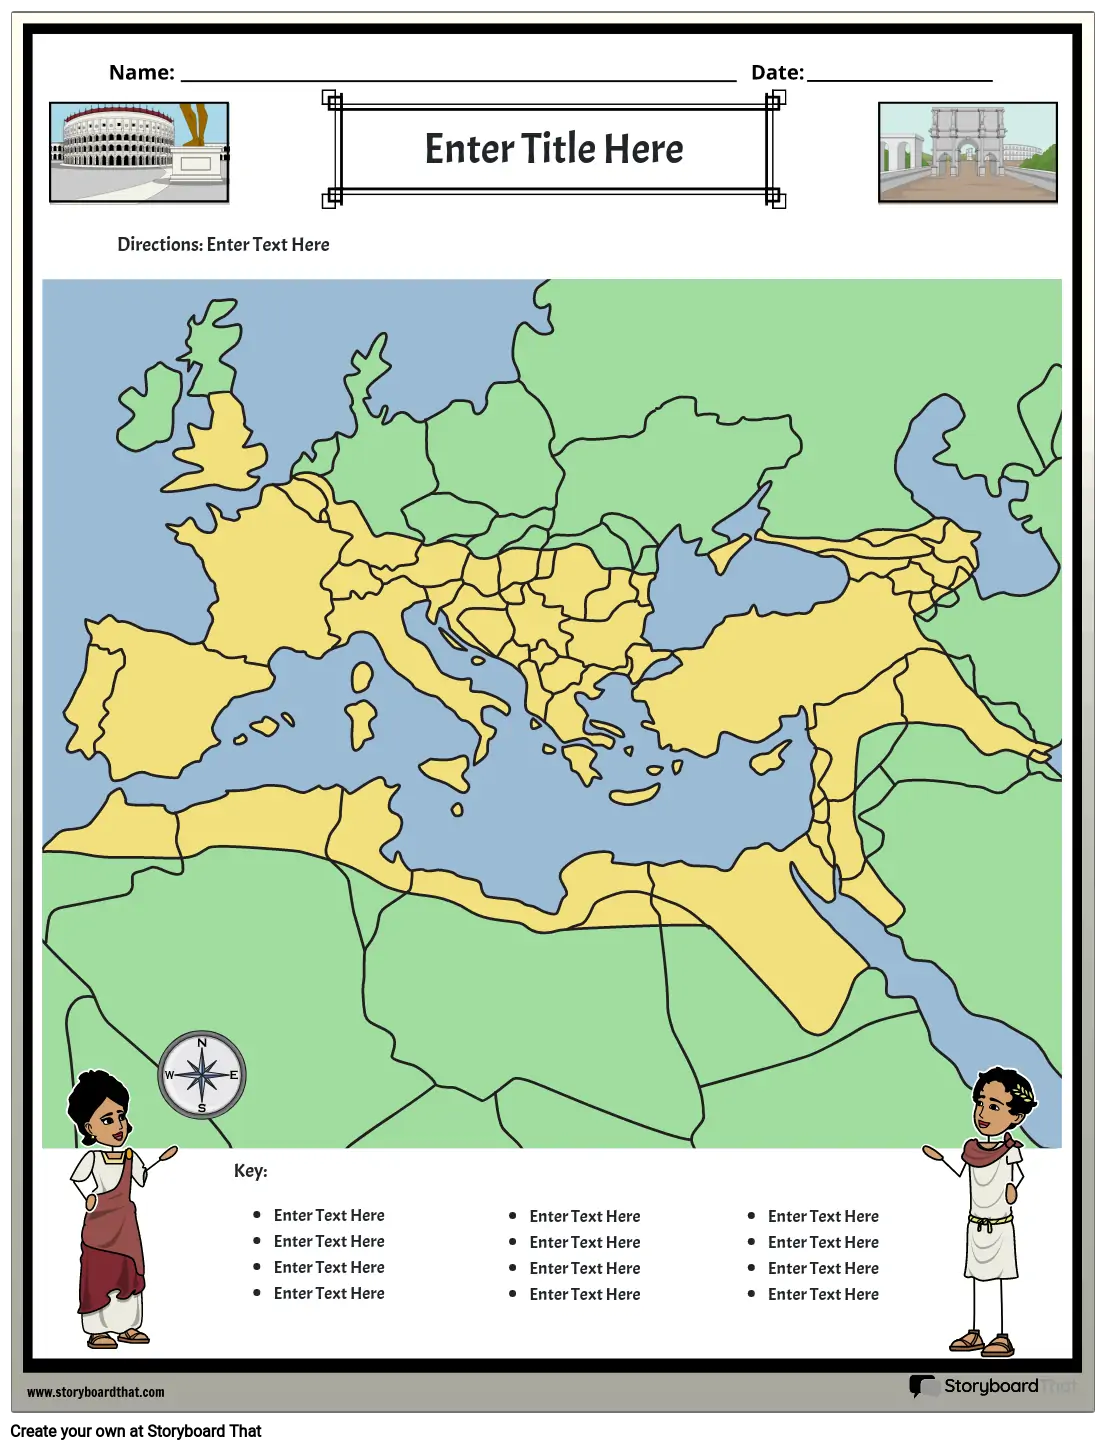 Mapa do Império Romano